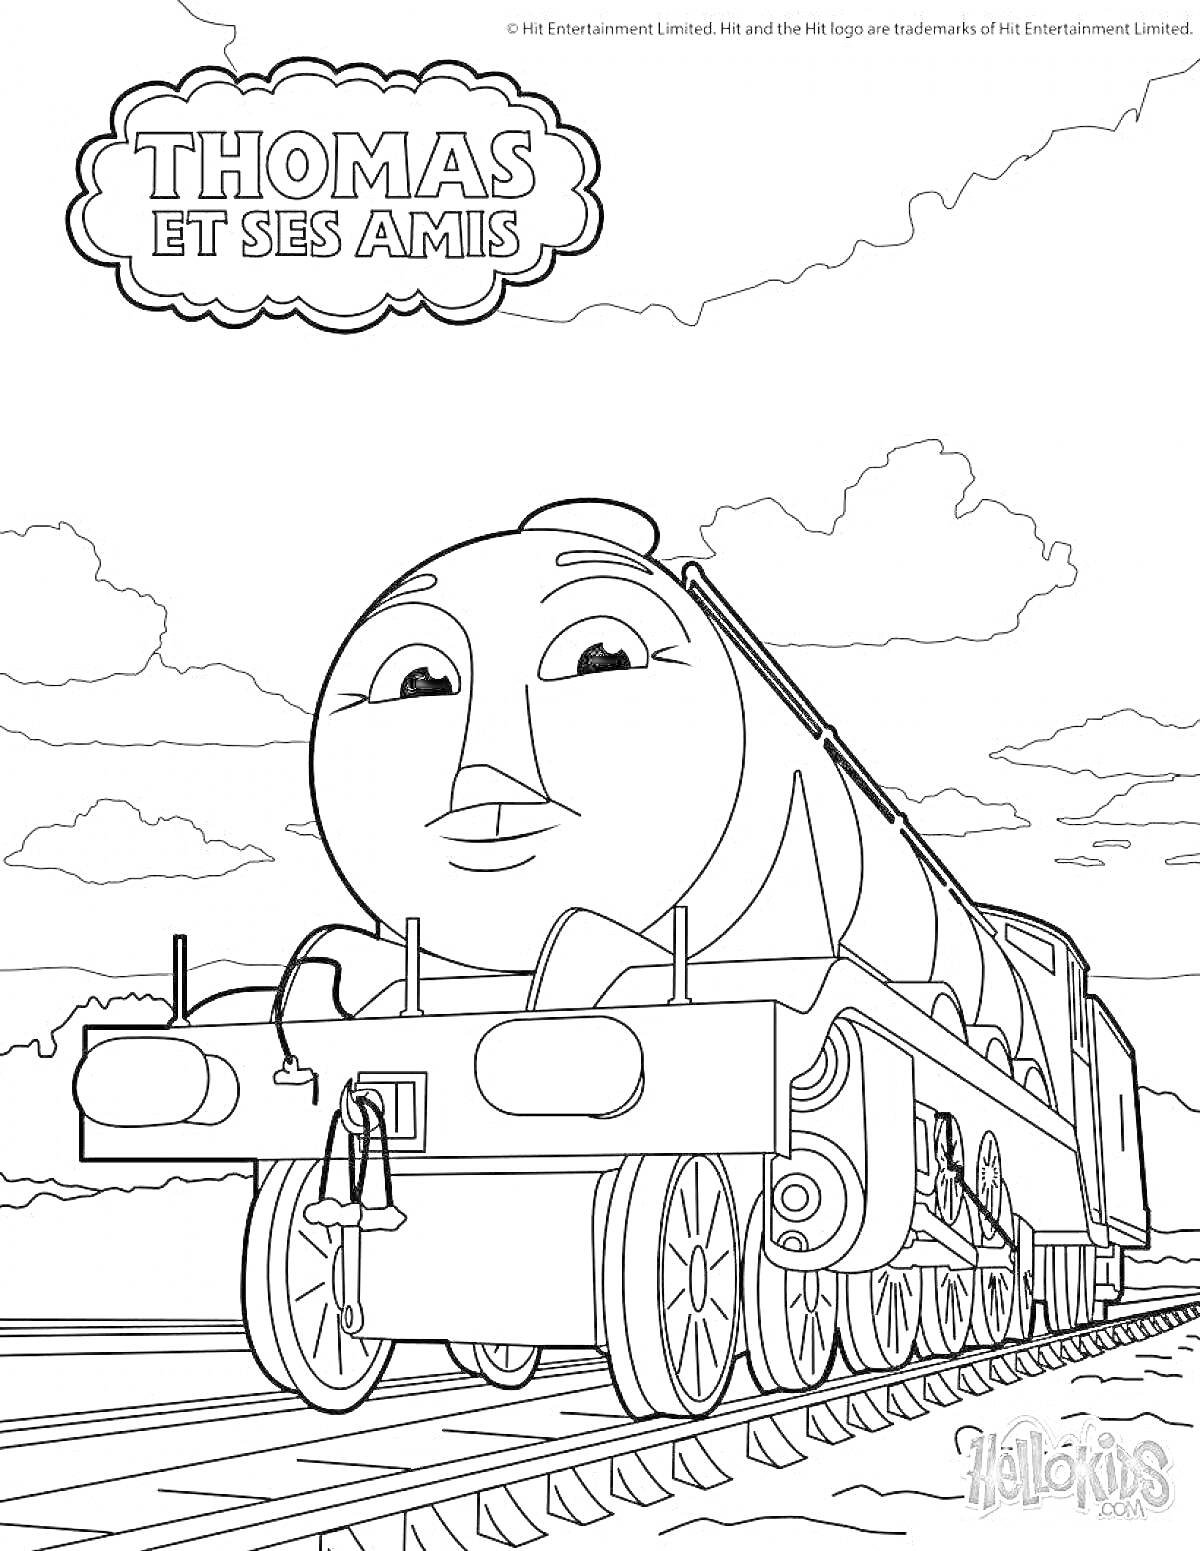 Паровозик Гордон на железнодорожных рельсах с облаками на фоне